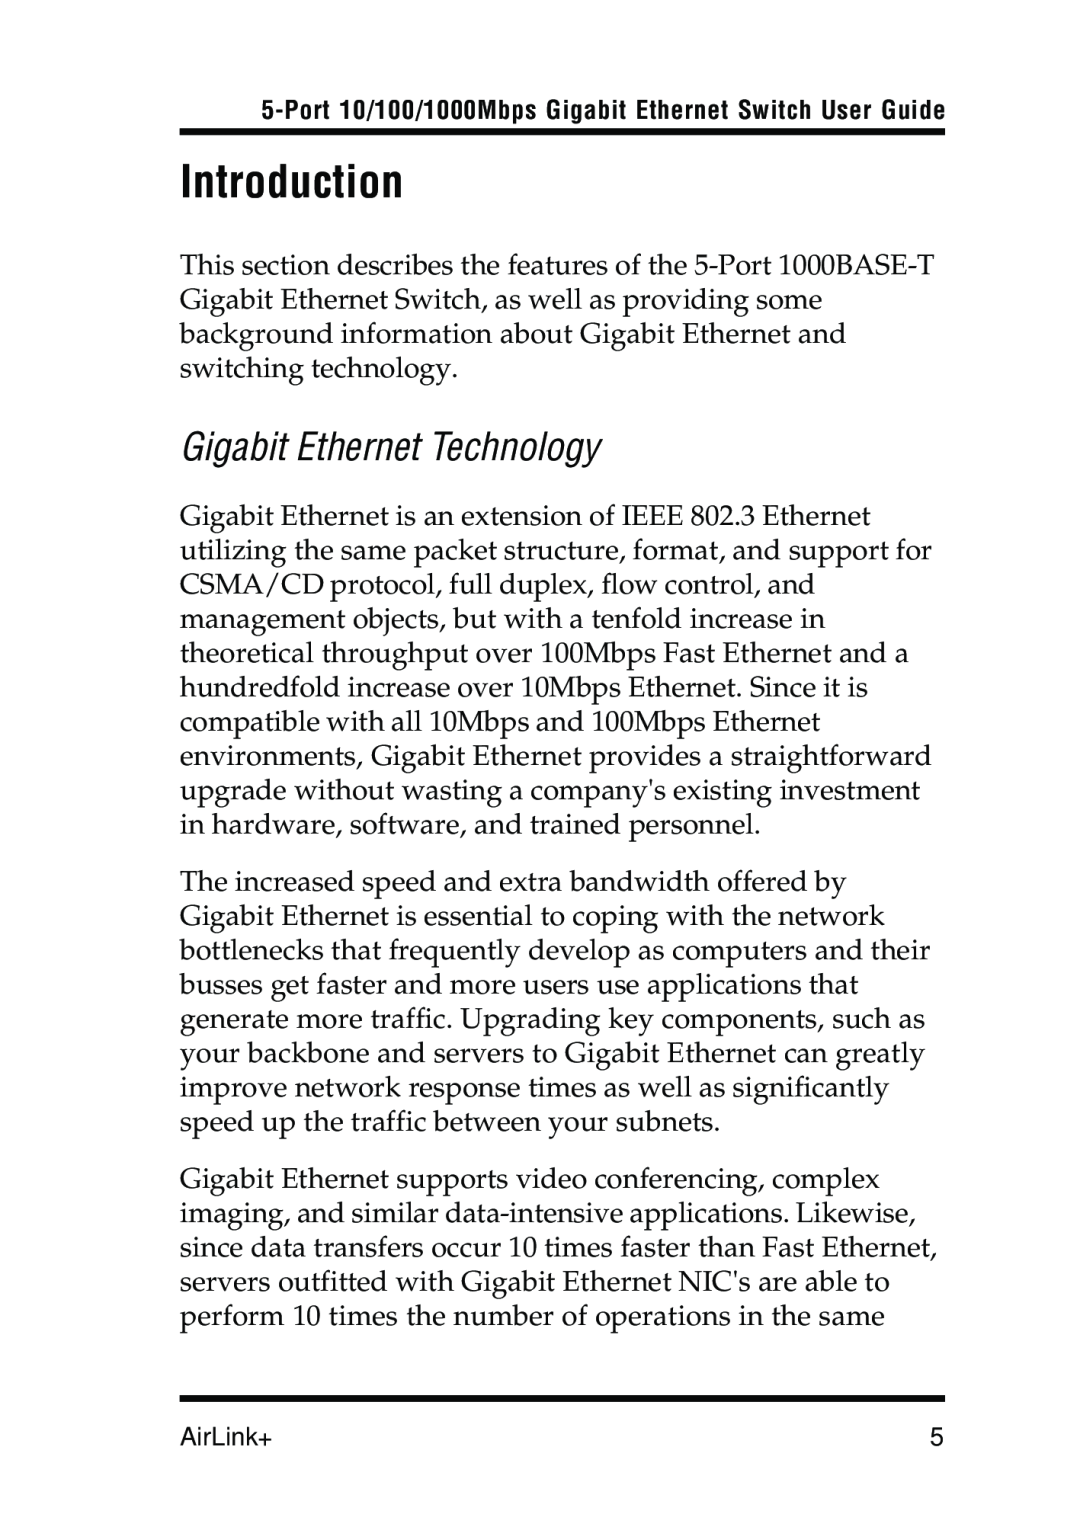 Airlink UG-AGIGA5SW-1105 manual Introduction, Gigabit Ethernet Technology 